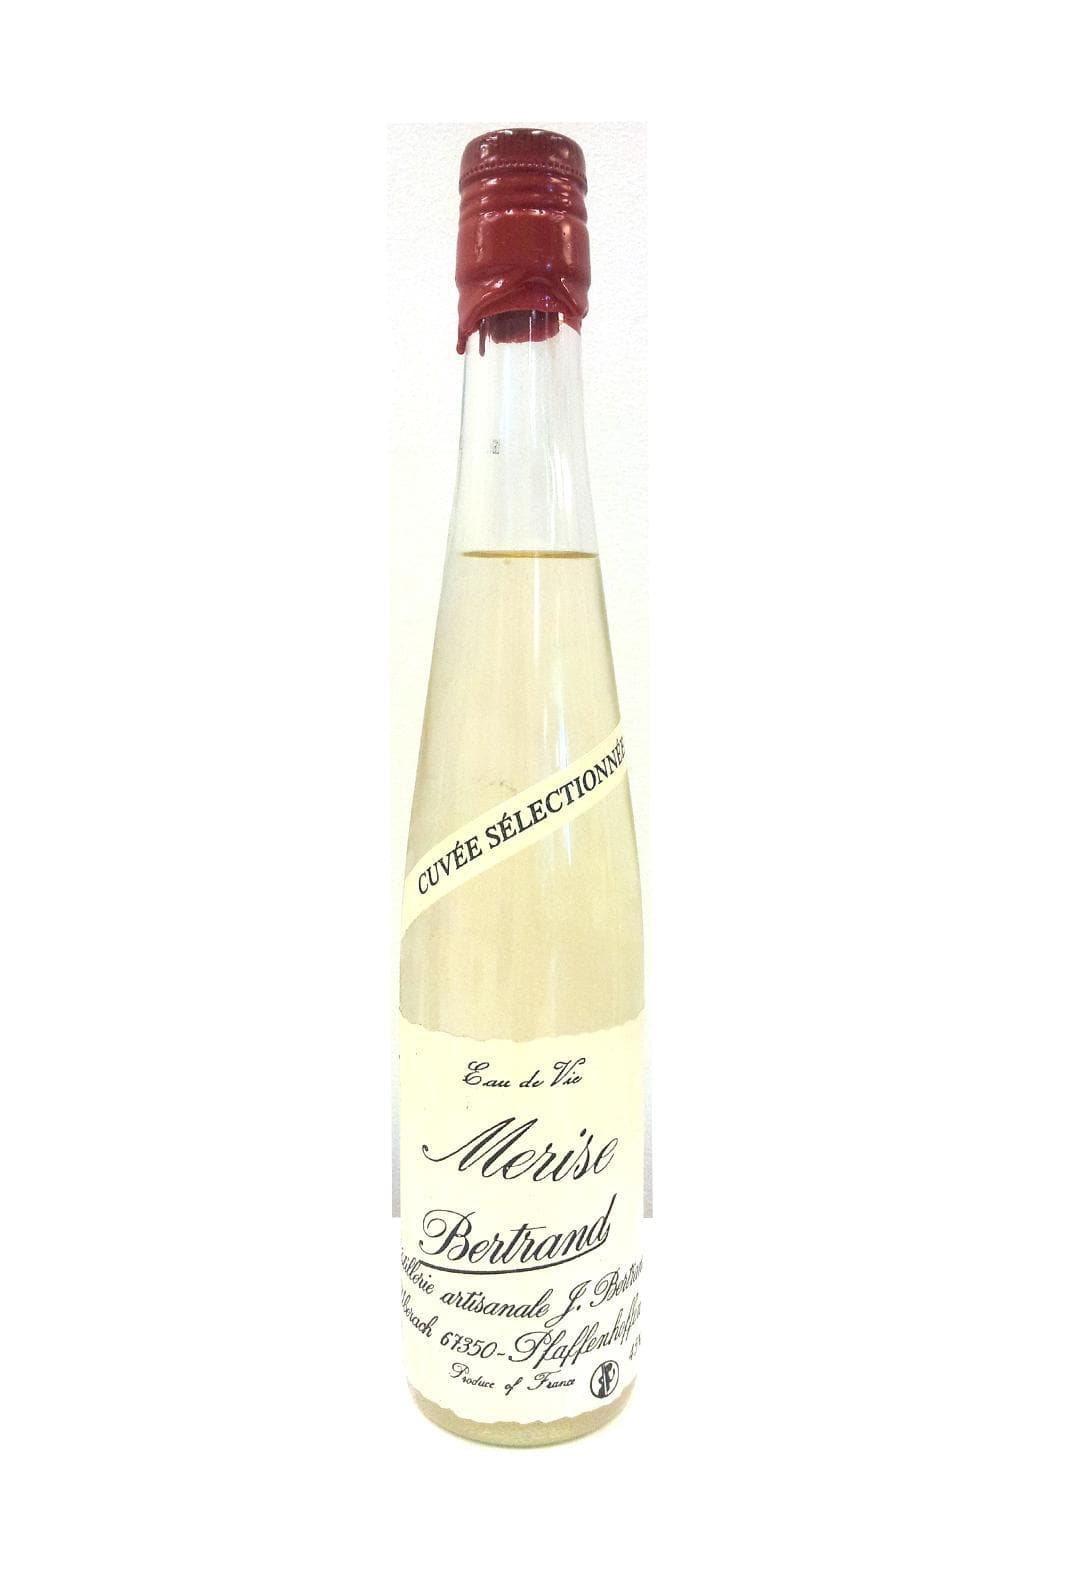 Bertrand Eau de Vie de Merise (Wild Cherry) 18% 375ml | Liqueurs | Shop online at Spirits of France